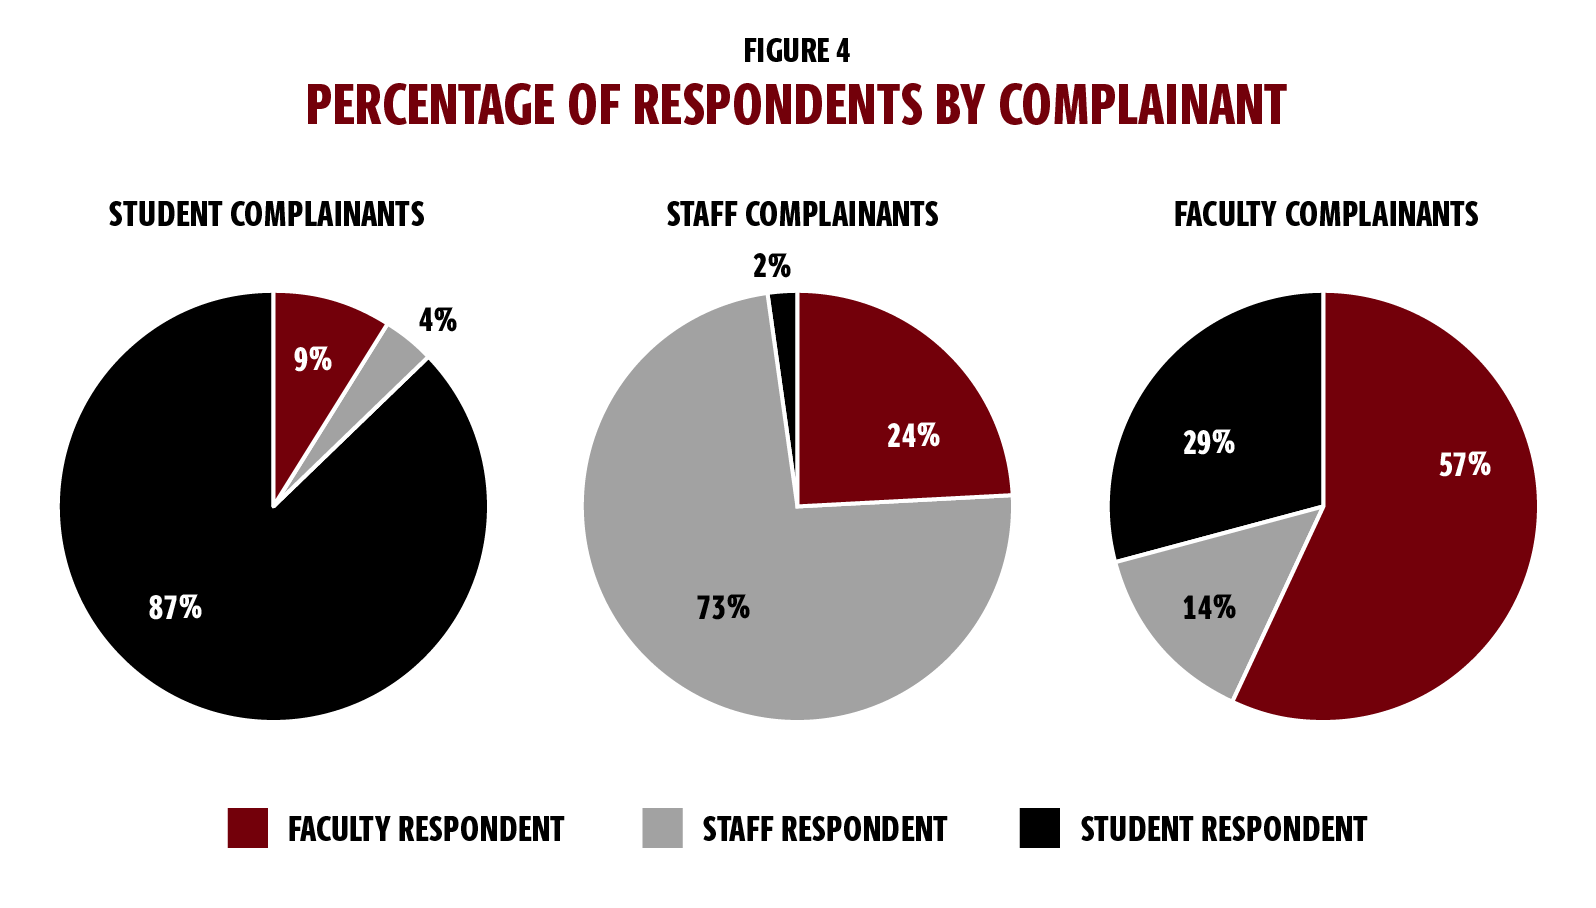 图4以三个饼状图显示投诉人所占的百分比。左边的第一个图表显示了学生的投诉情况。在这个图表中，87%的受访者是学生;9%是教师;4%是员工。中间的饼图显示了员工的投诉者，73%的员工做出了回应;24%的教师受访者;还有2%的学生受访者。右边的饼状图显示了教师的投诉情况，57%的教师做出了回应;29%的学生受访者; and 14 percent staff respondents.